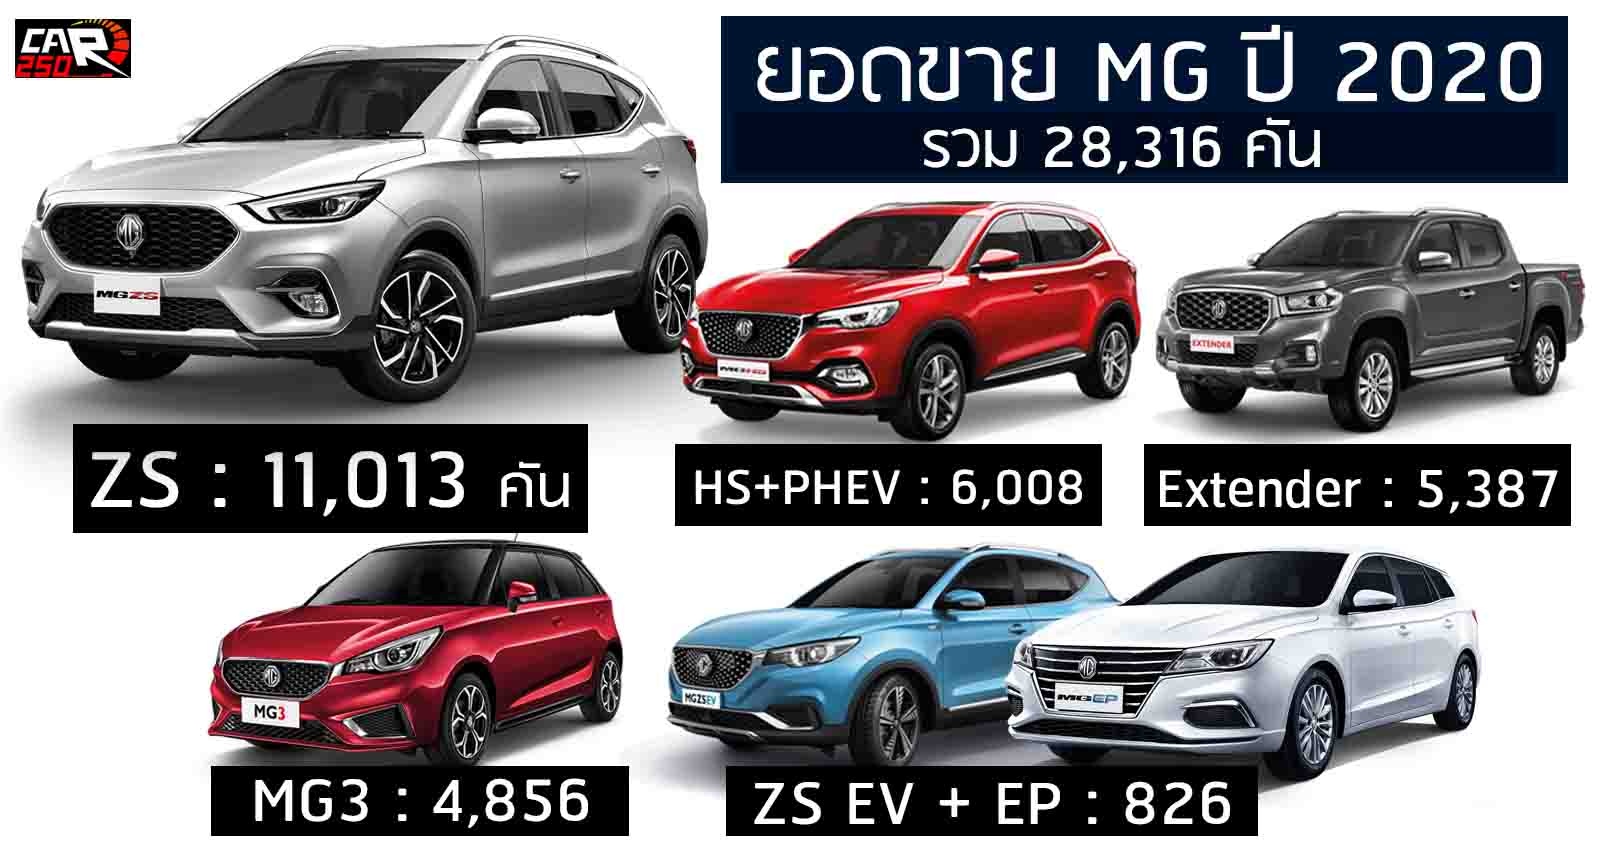 เผยยอดขาย MG ปี 2563 รวม 28,316 คัน ในไทย